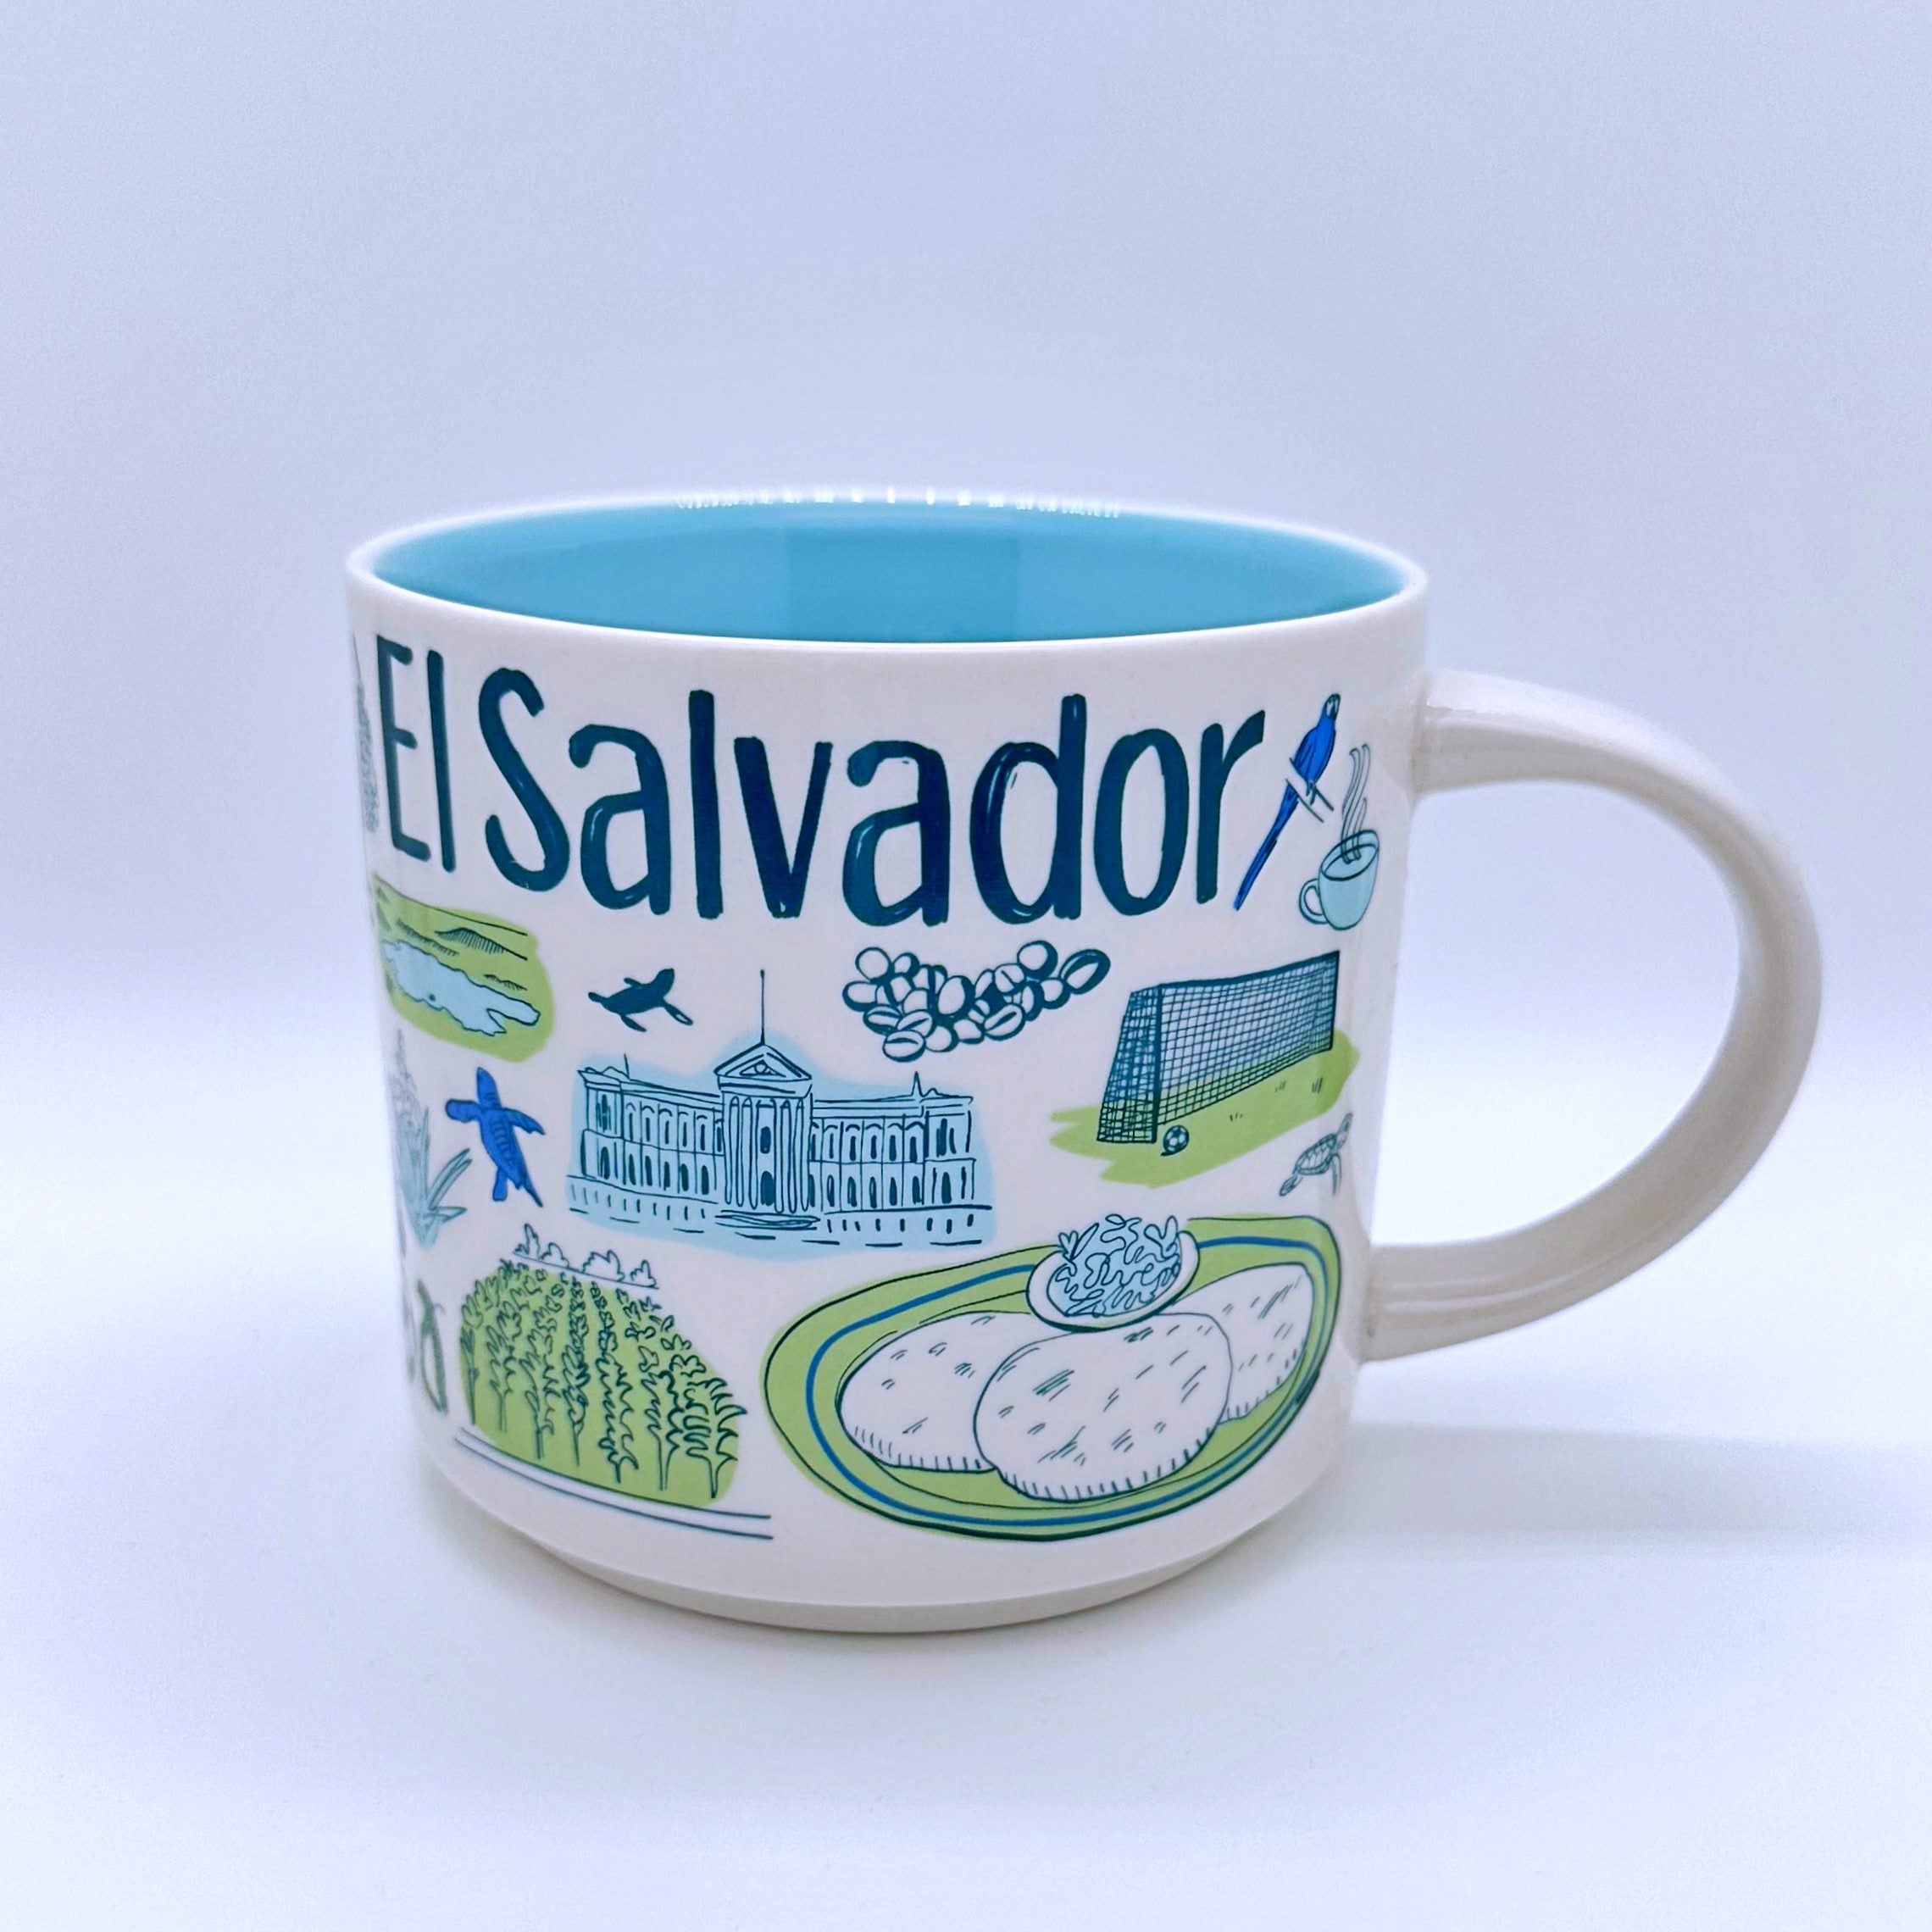 El Salvador Country Kaffee Tasse